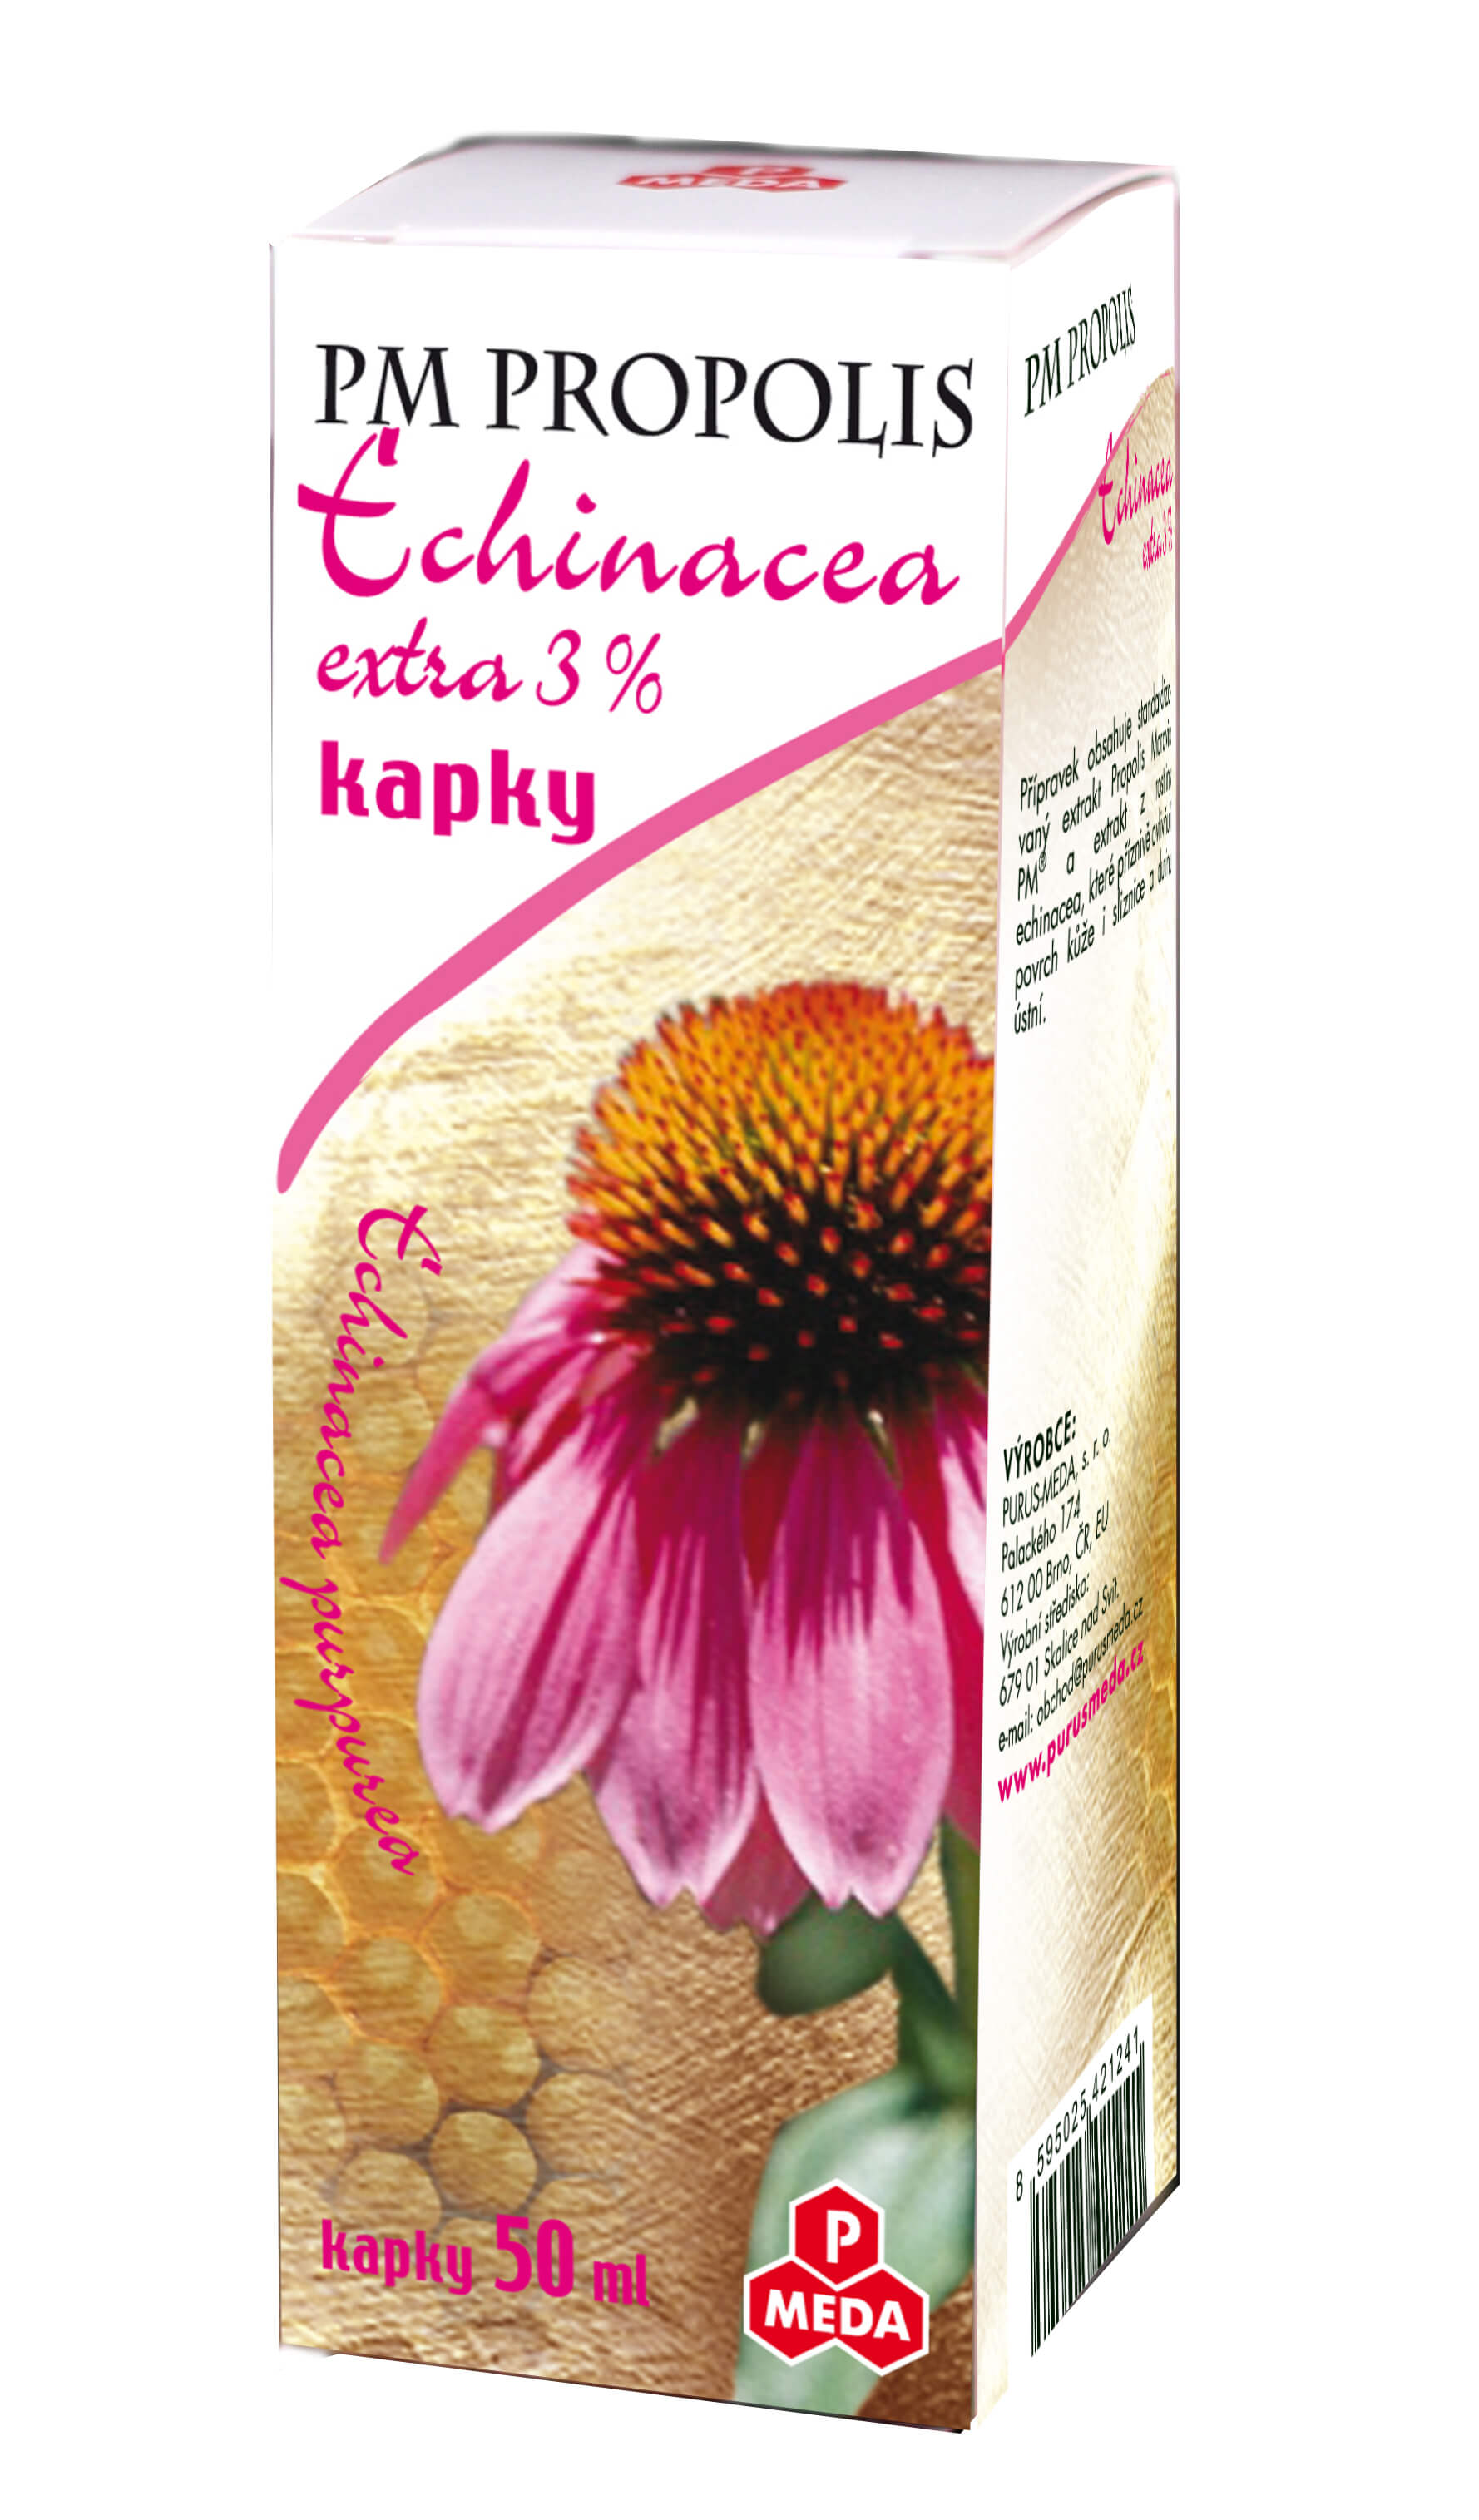 Zobrazit detail výrobku Purus Meda PM Propolis Echinacea extra 3 % kapky 50 ml + 2 měsíce na vrácení zboží